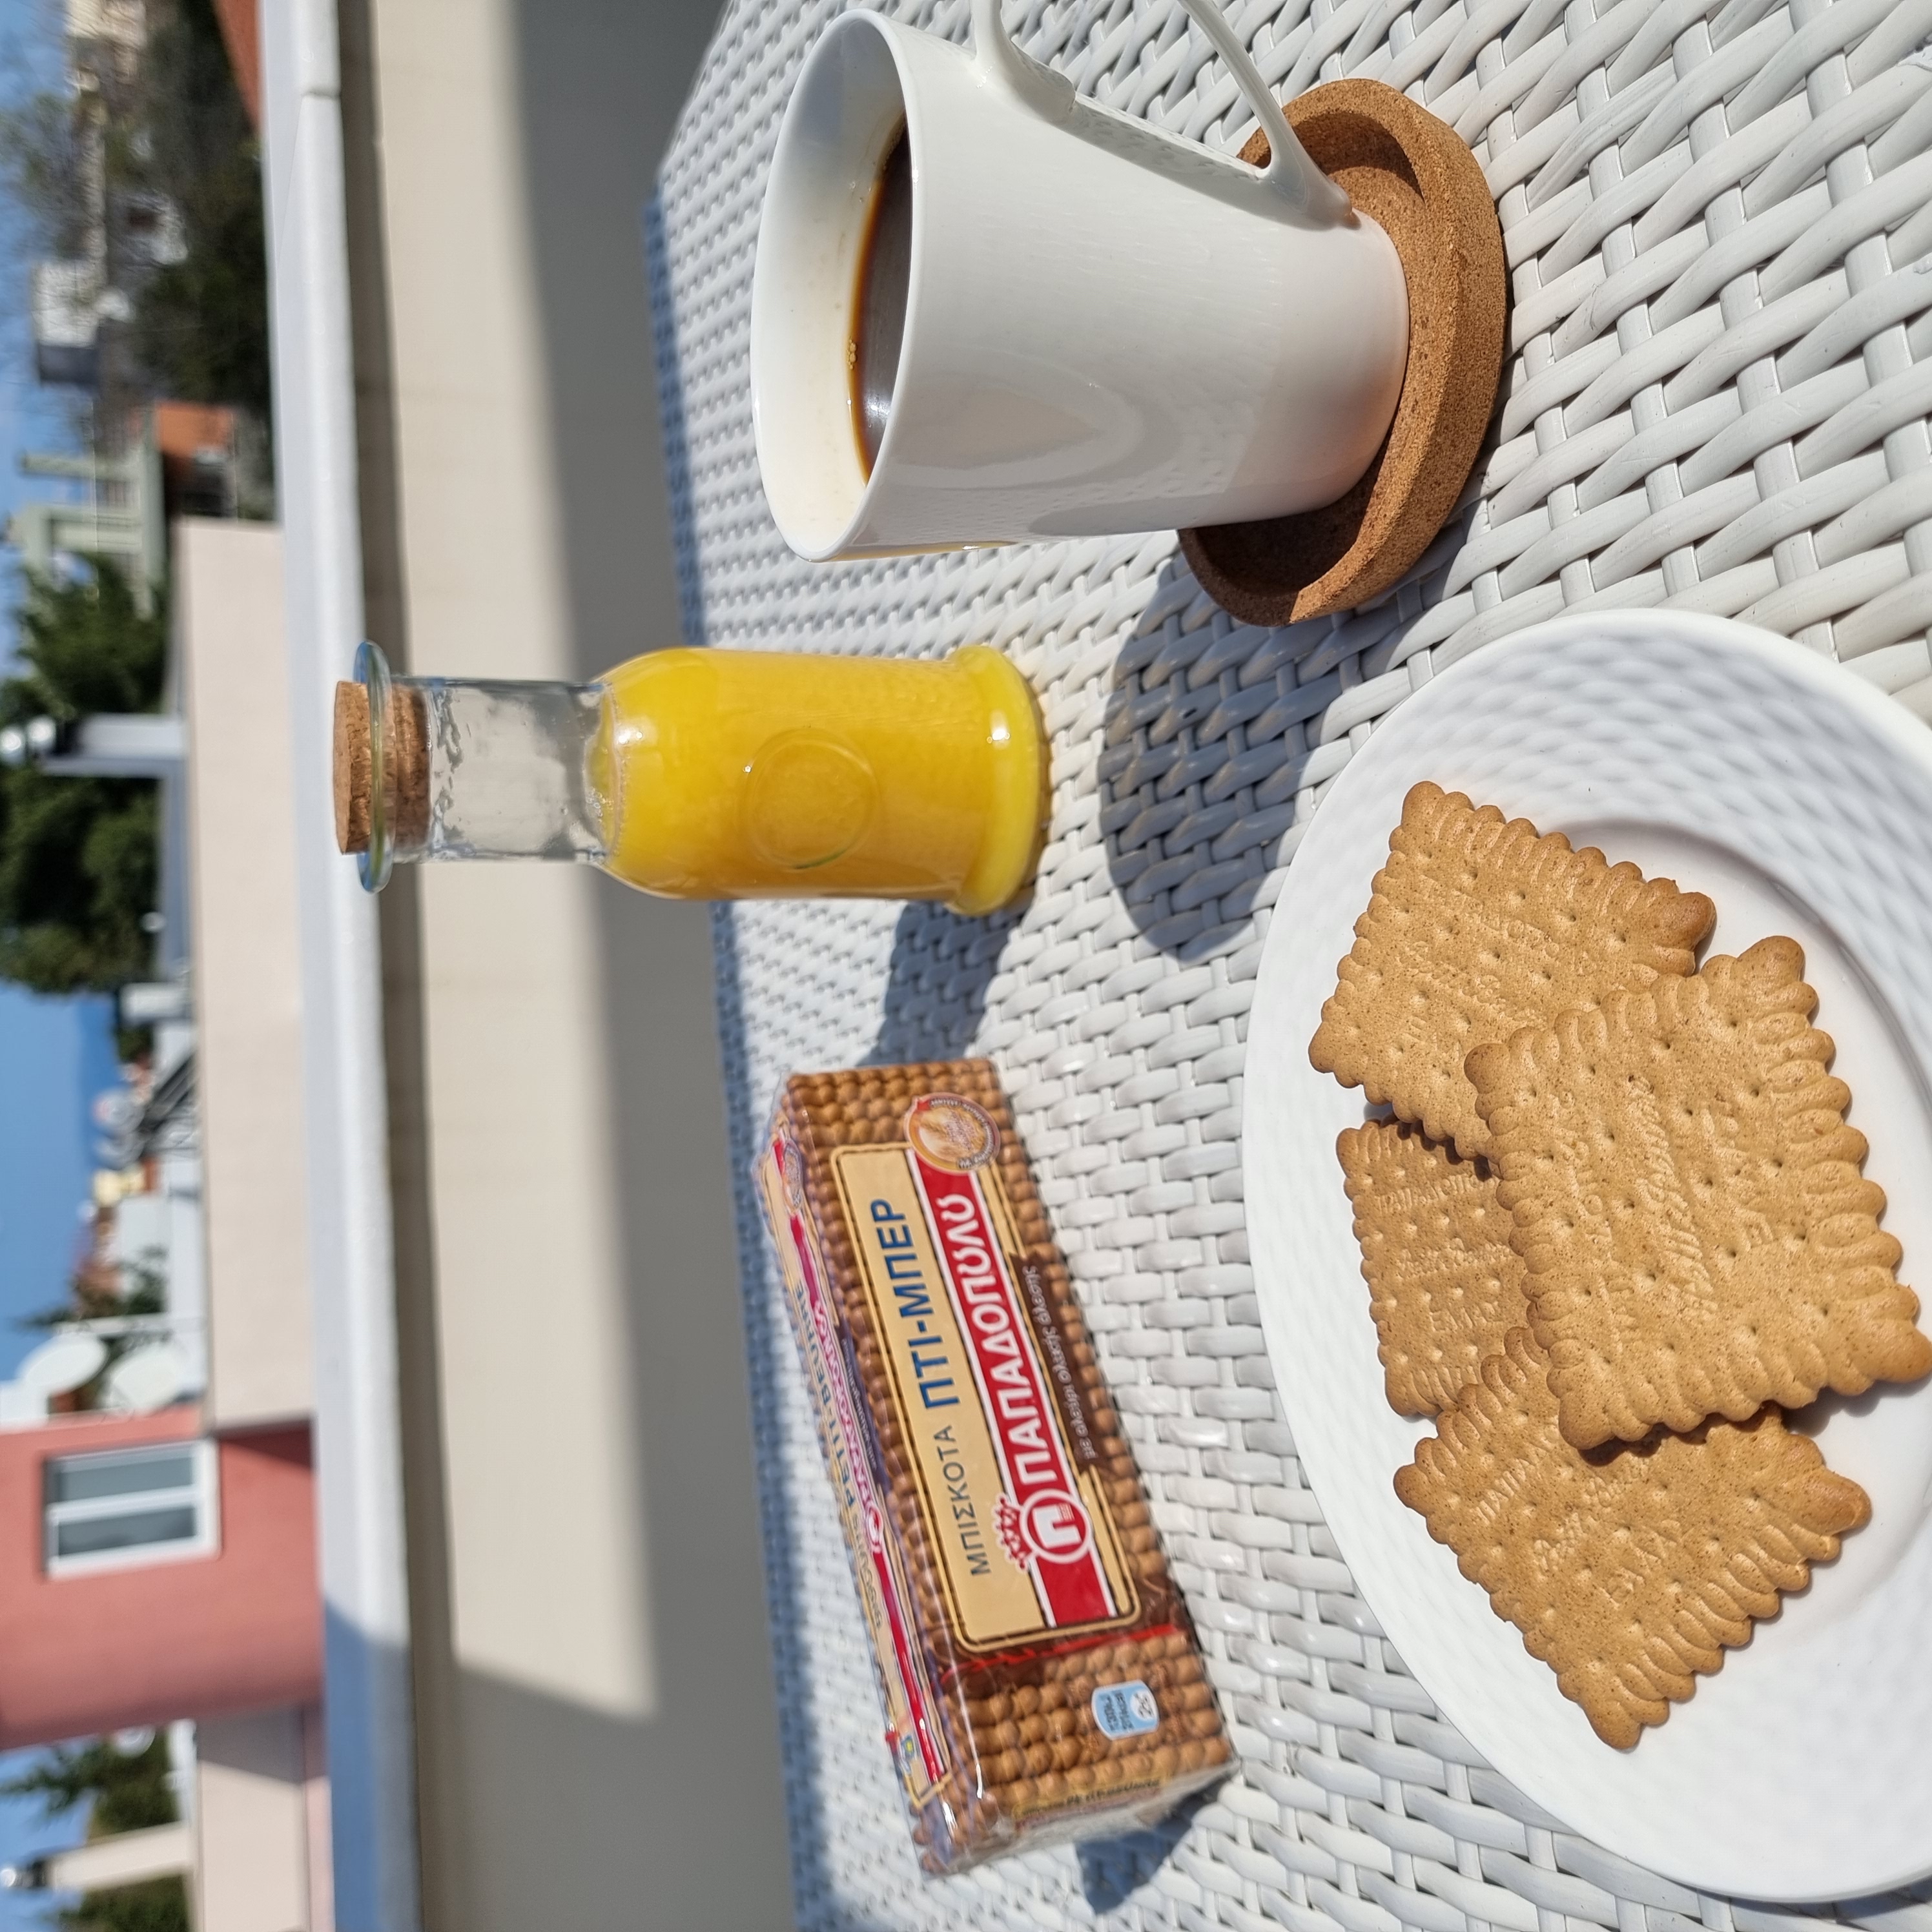 image for Πρωινό στο μπαλκόνι με Πτι Μπερ ολικής και καφέ!